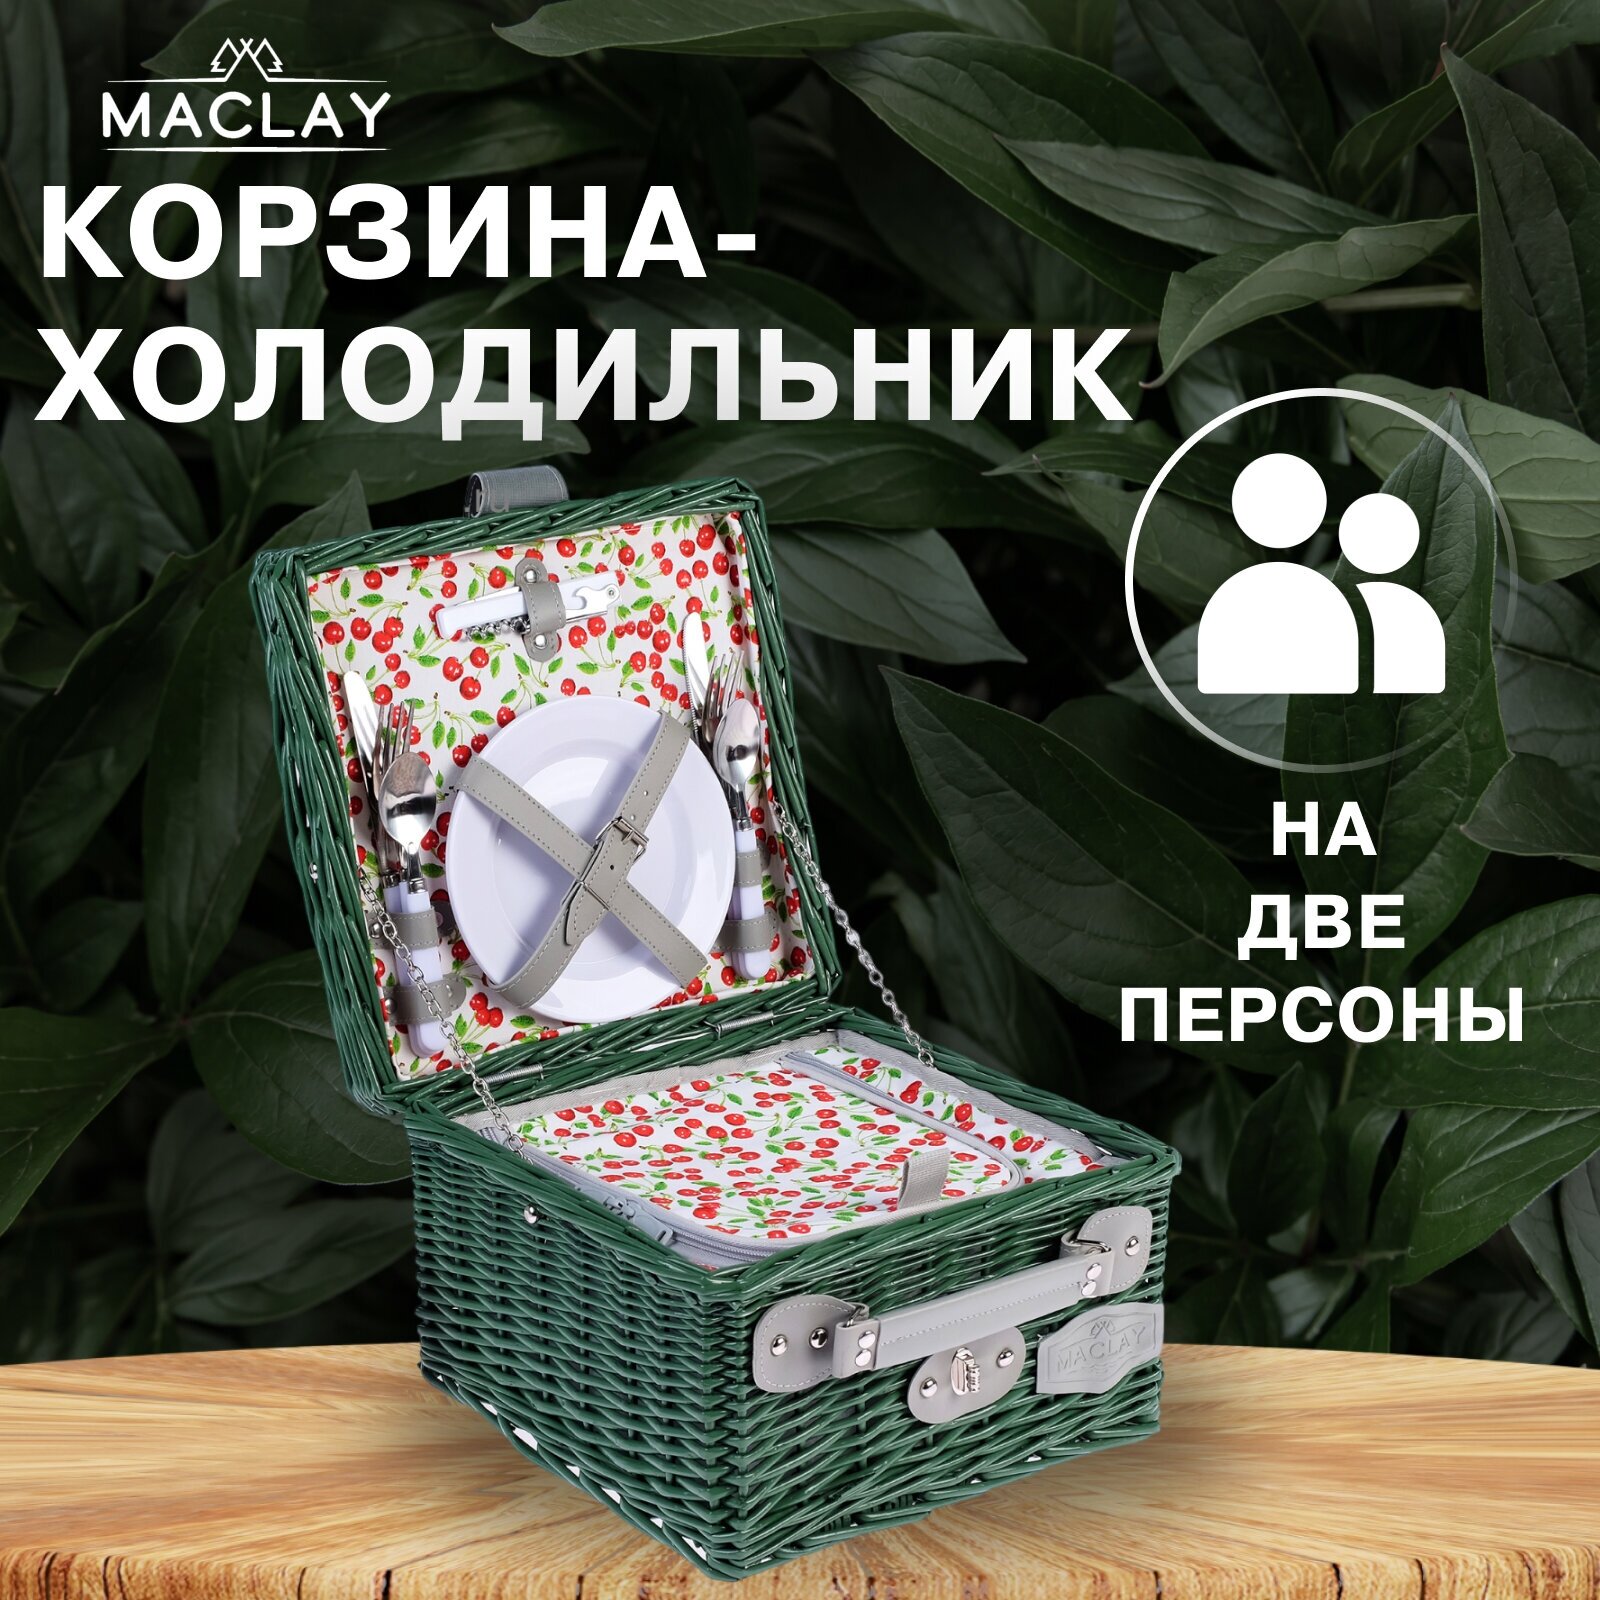 Подарки Корзина для пикника "Iren" на 2 персоны с холодильным отделением (30 х 30 х 20 см)